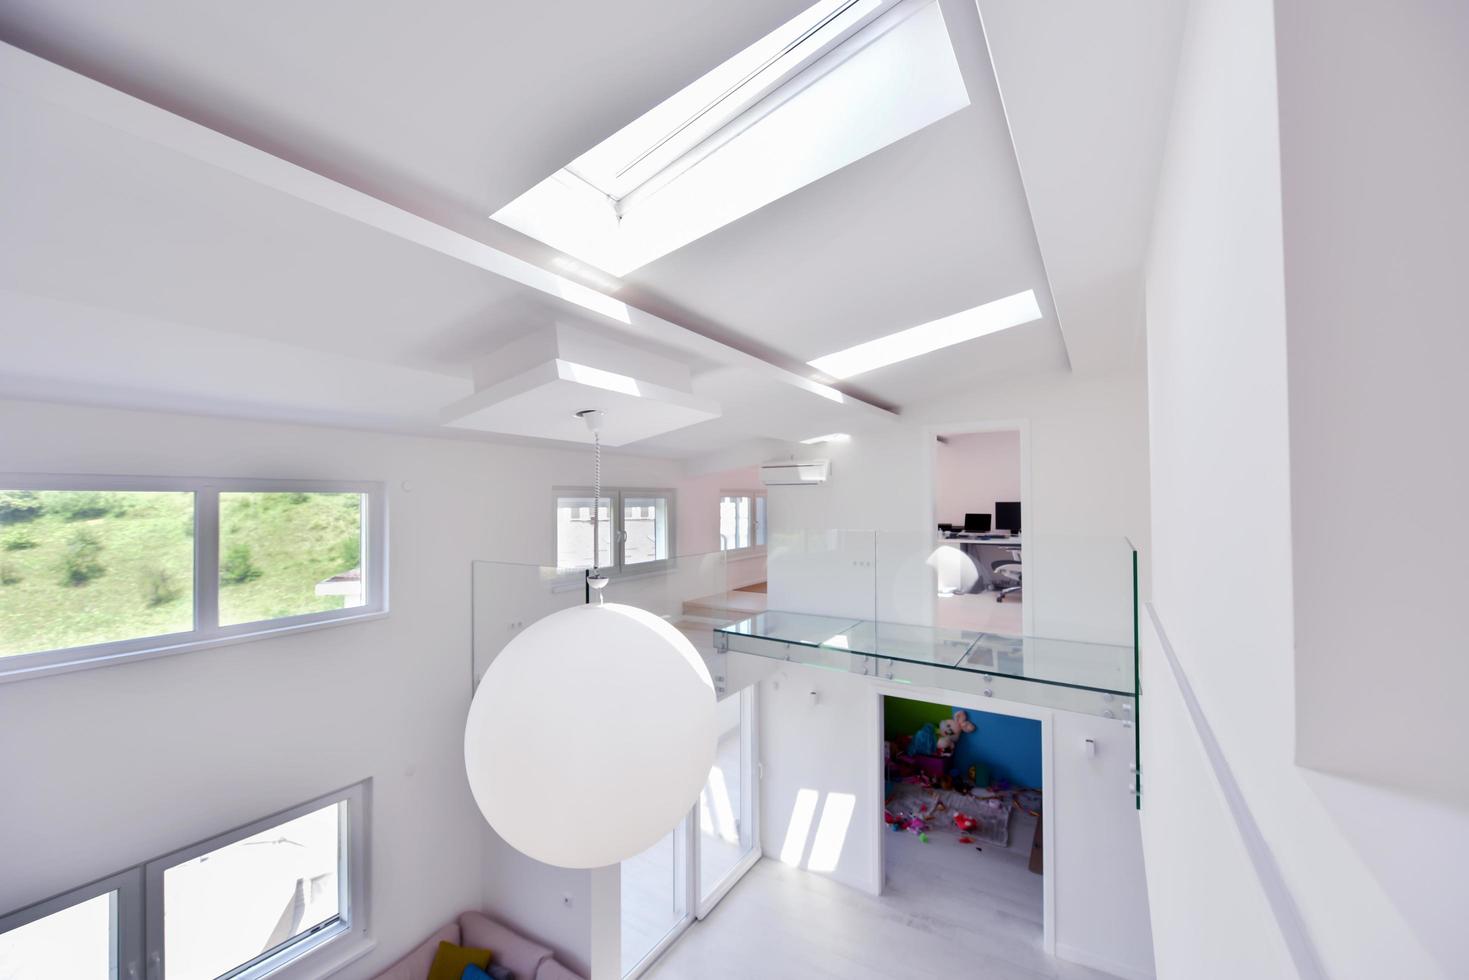 Suécia, 2022 - interior de um apartamento de dois andares foto